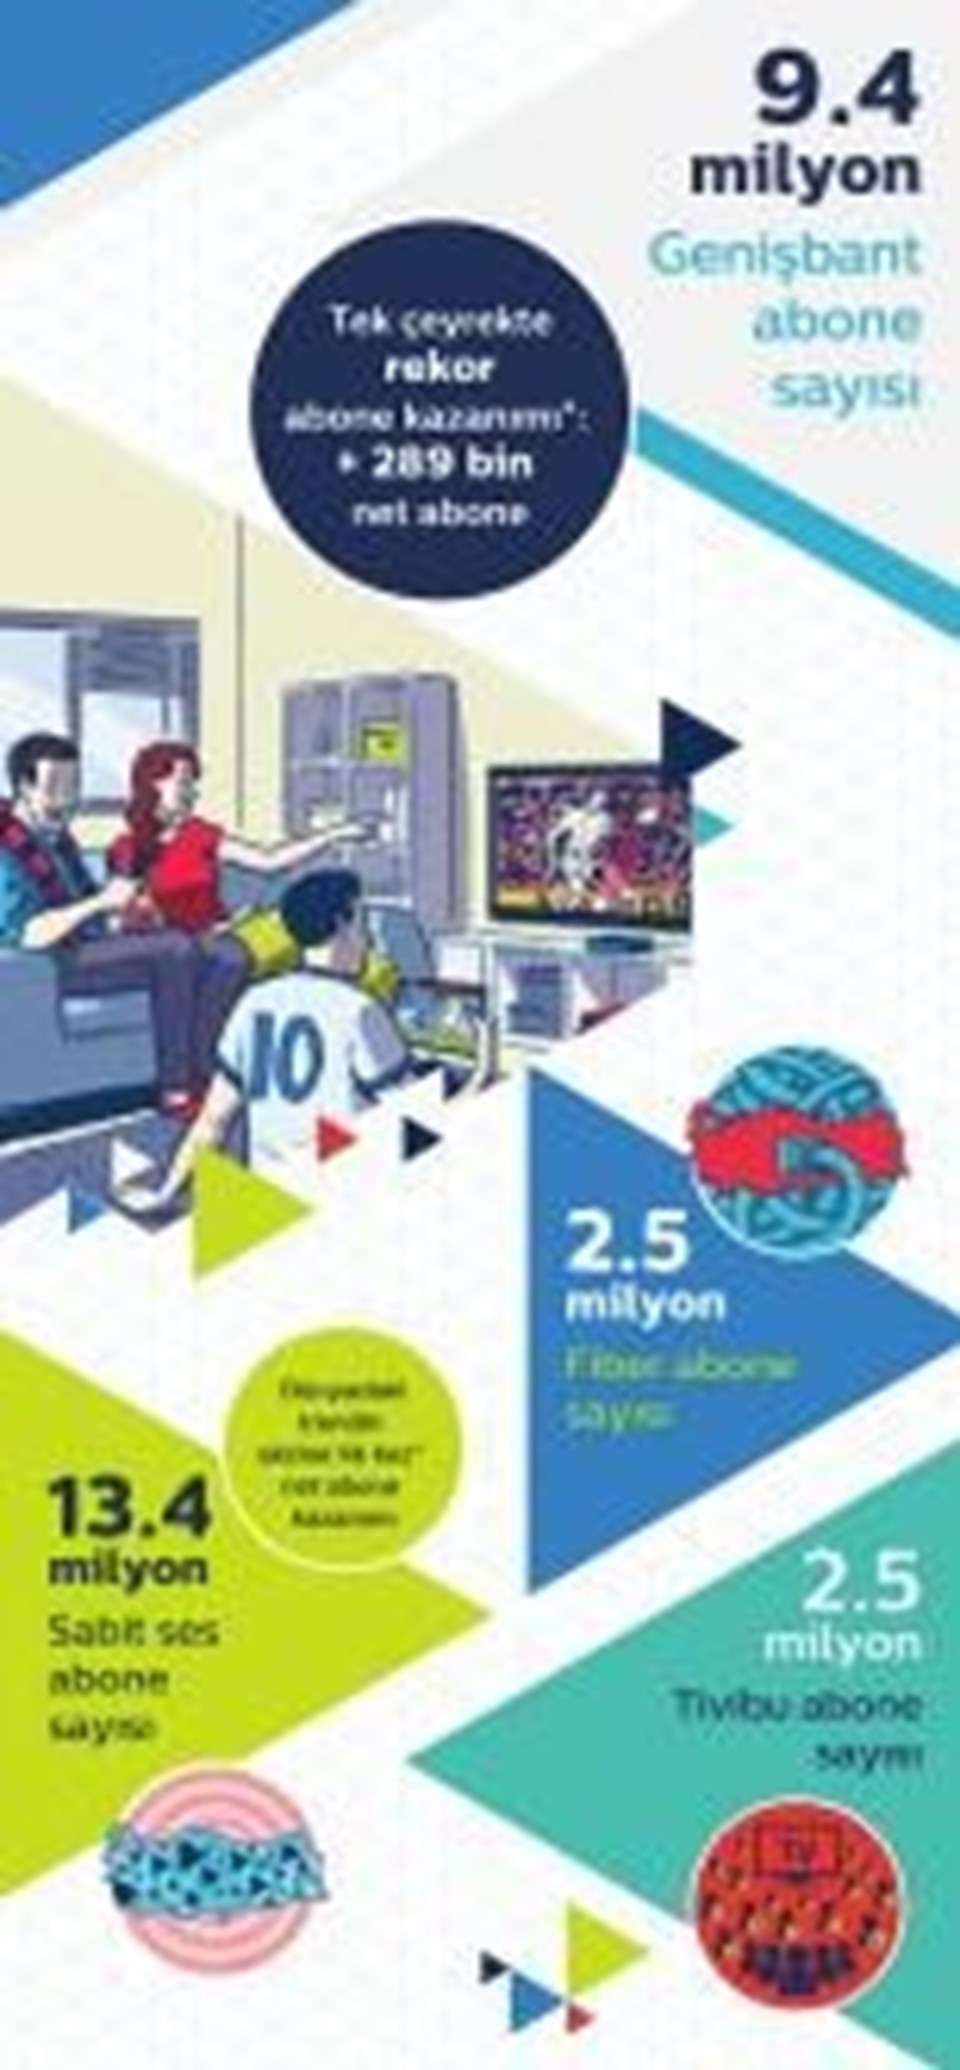 Türk Telekom 40,5 milyon aboneye ulaştı (Türkiye nüfusunun yarısı) - 3